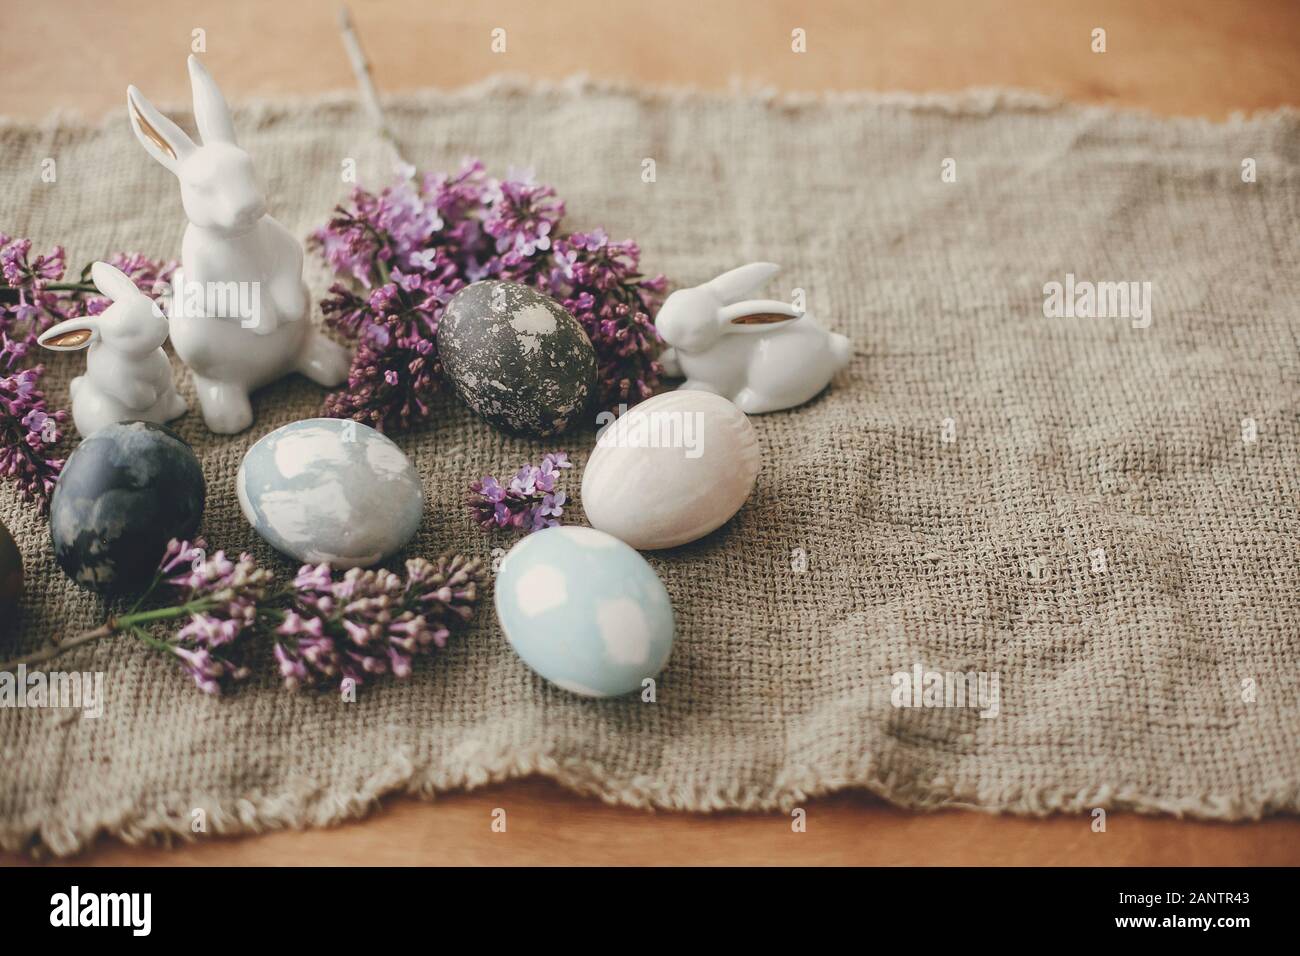 23 Vintage Easter Decorations for a Nostalgic Spring Celebration